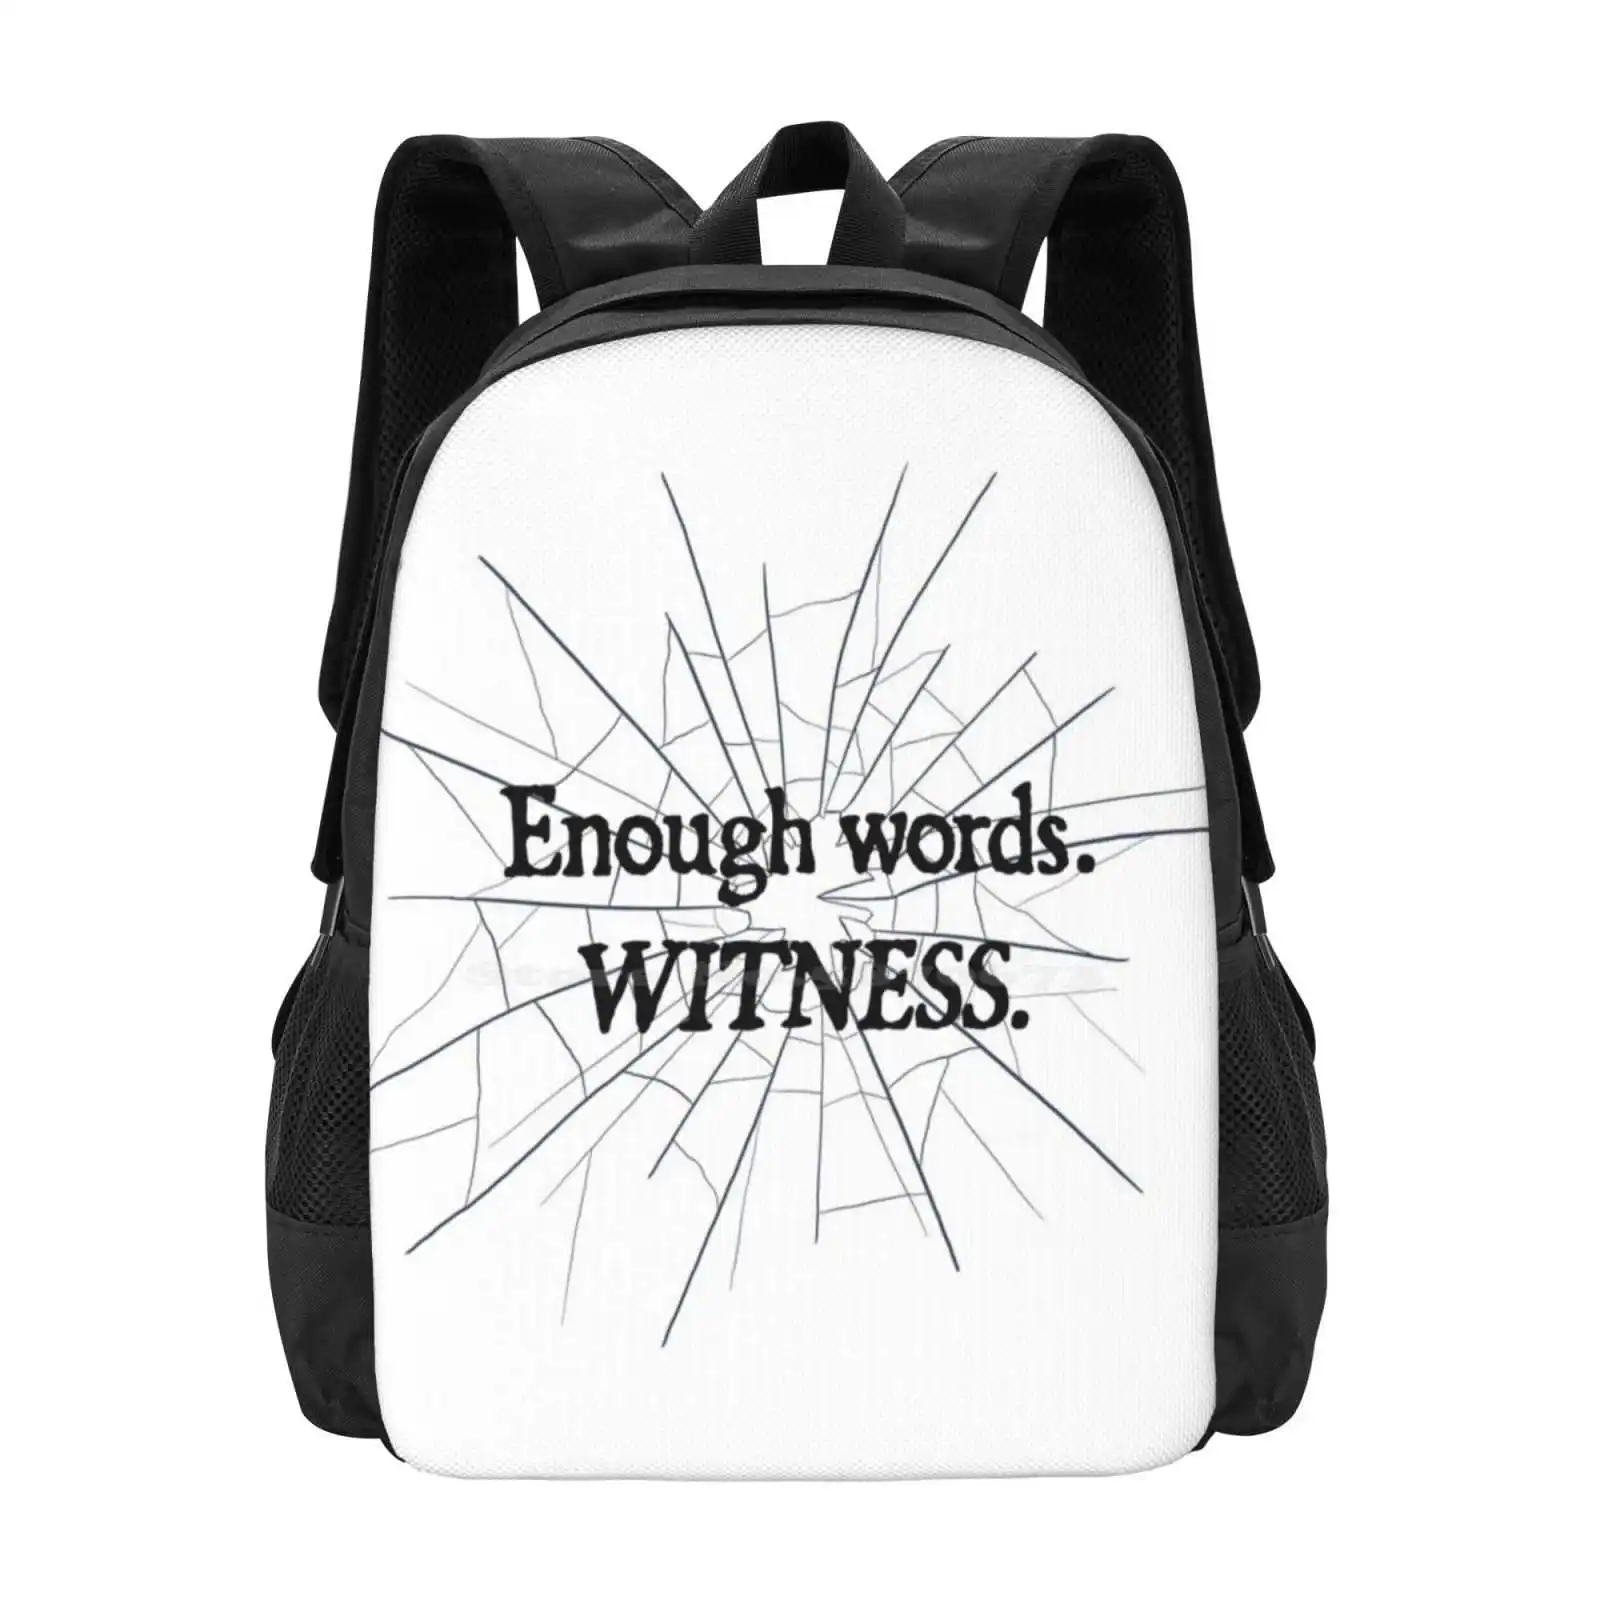 

Модный дизайнерский дорожный рюкзак для ноутбука, школьный рюкзак с узором, сумка Malazan Karsa Orlong для книг, любителей чтения, любителей художественной графики